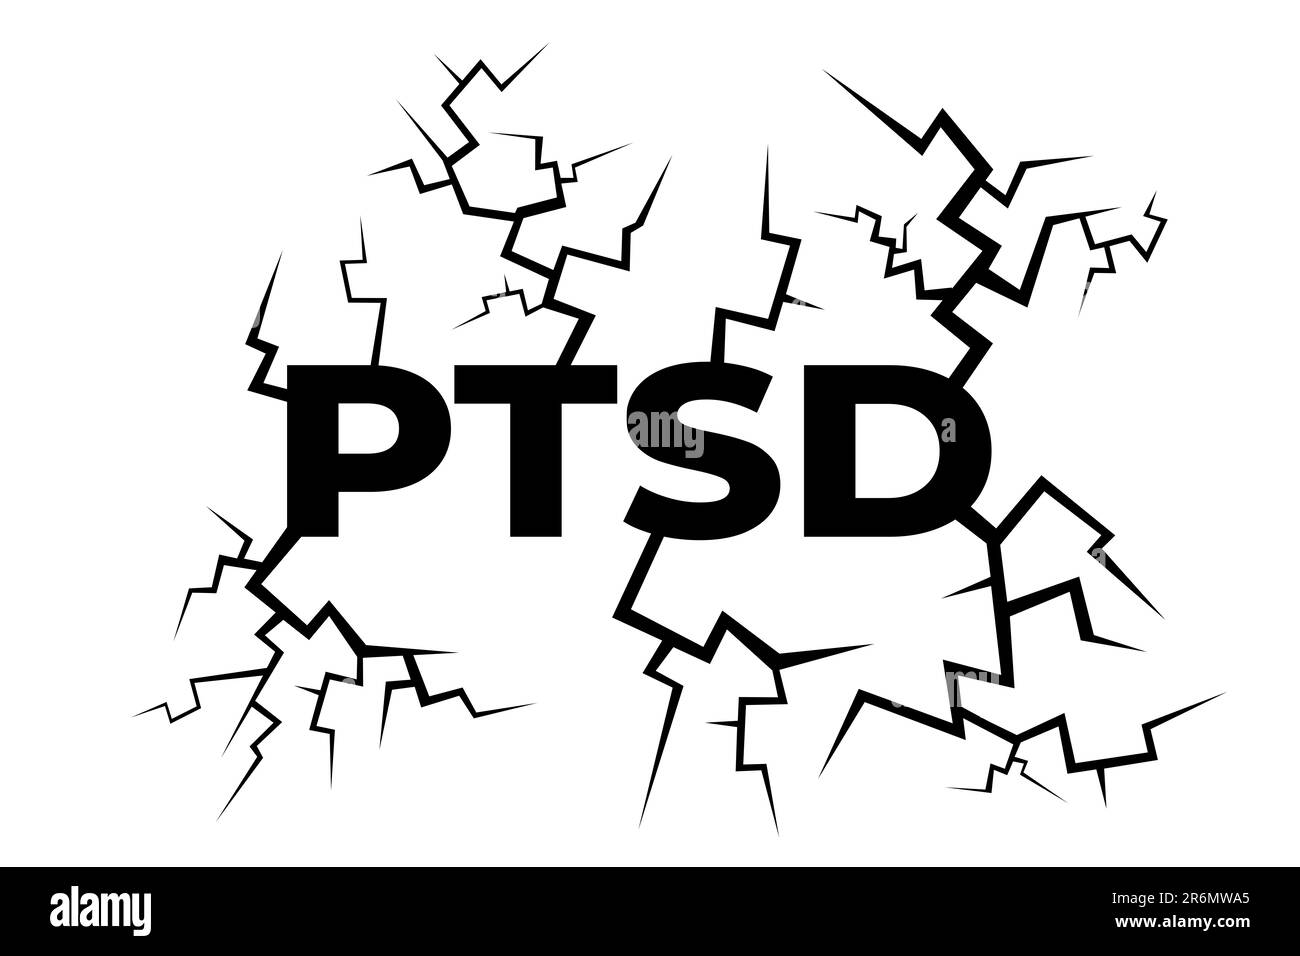 PTSD e disturbo post traumatico da stress - testo e crepe come metafora del dolore mentale, del danno e dello stress. Illustrazione vettoriale del testo su sfondo bianco Foto Stock